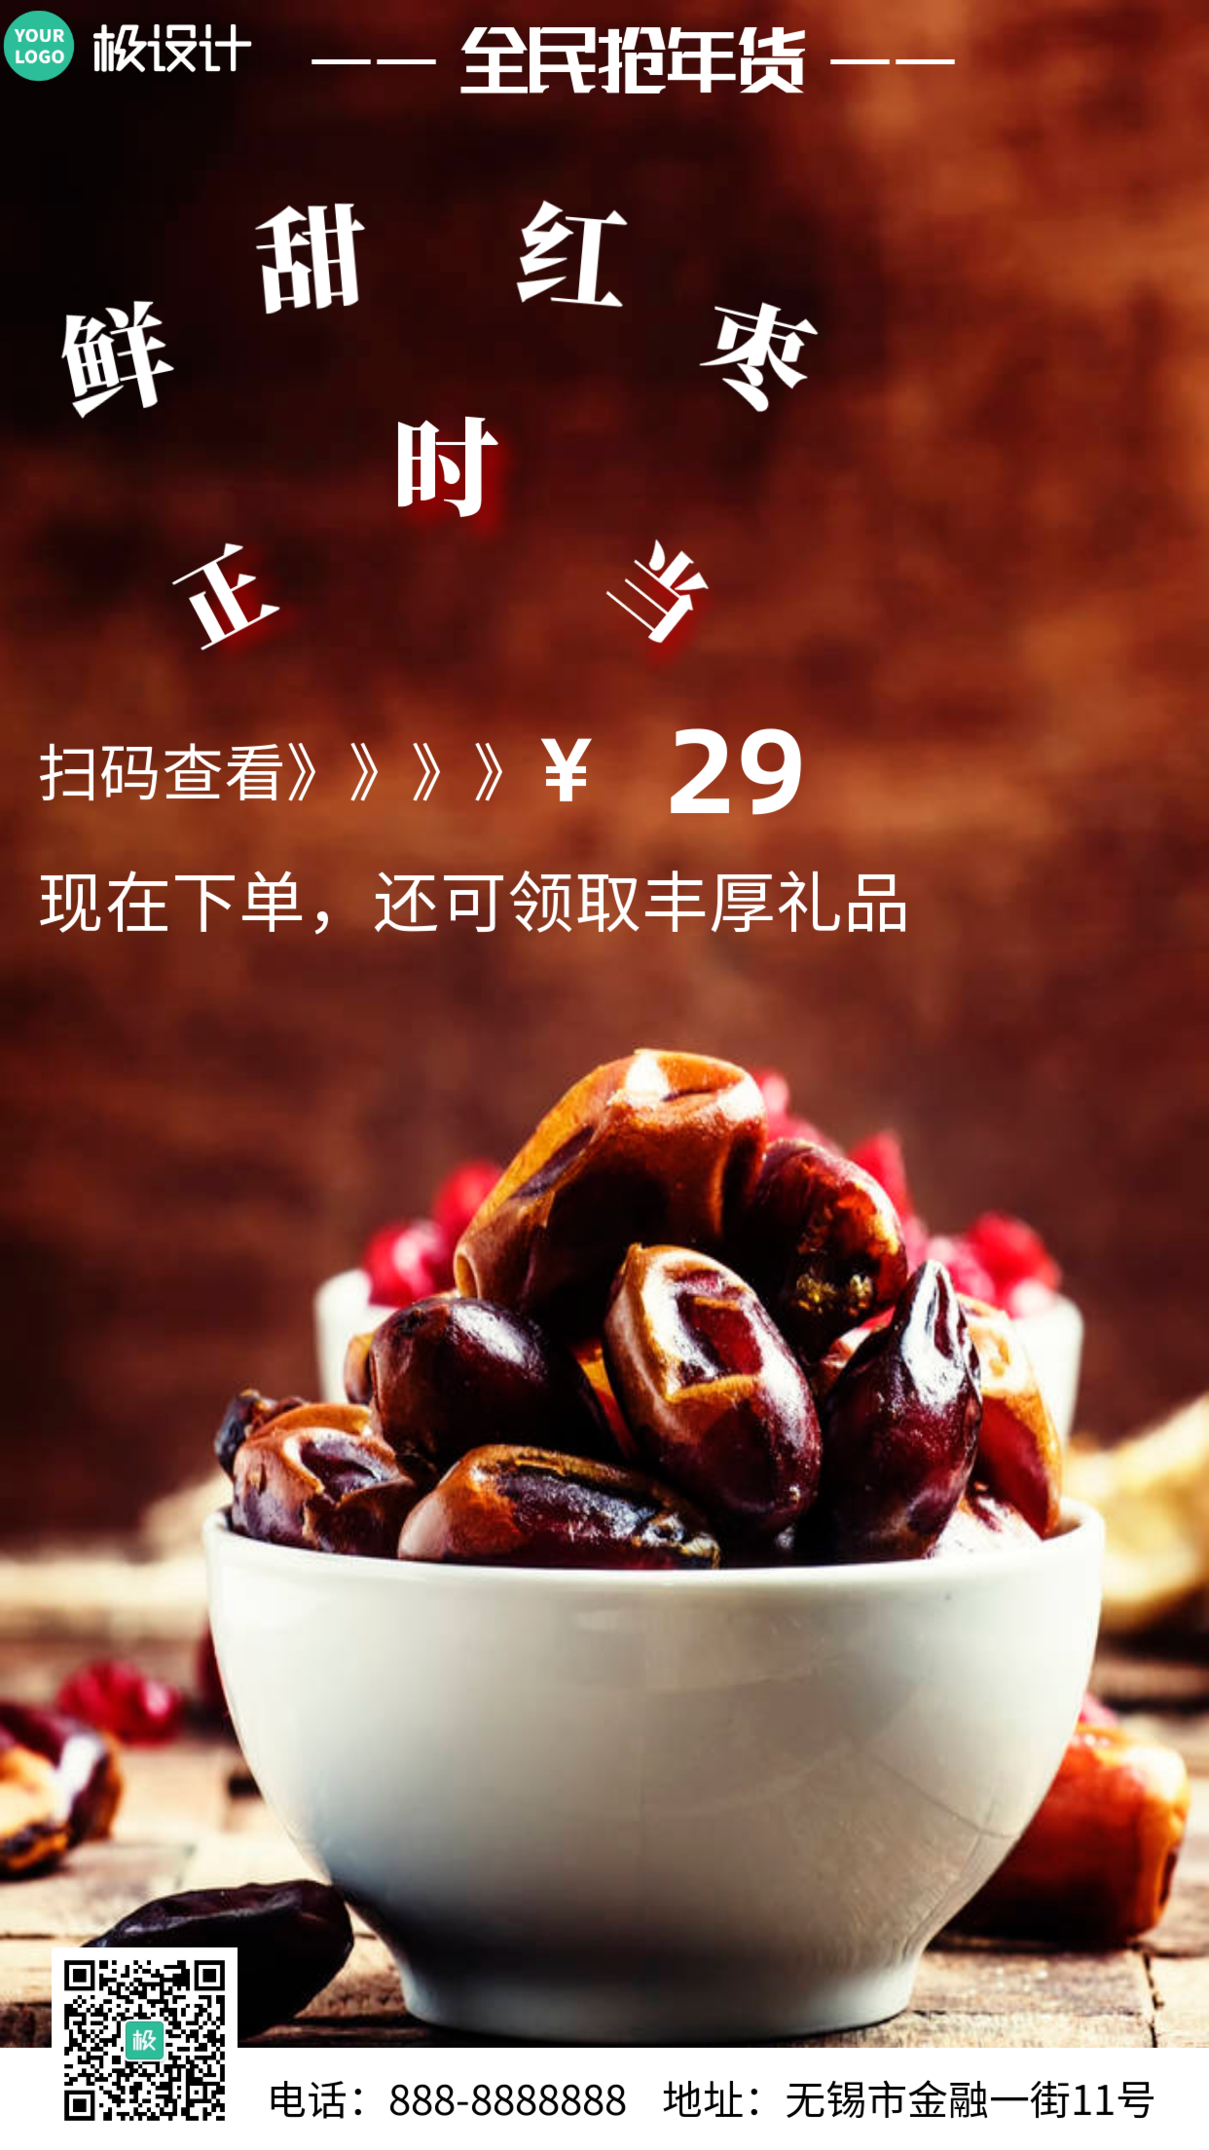 鲜甜红枣正时当年货促销红色大气摄影图横板海报